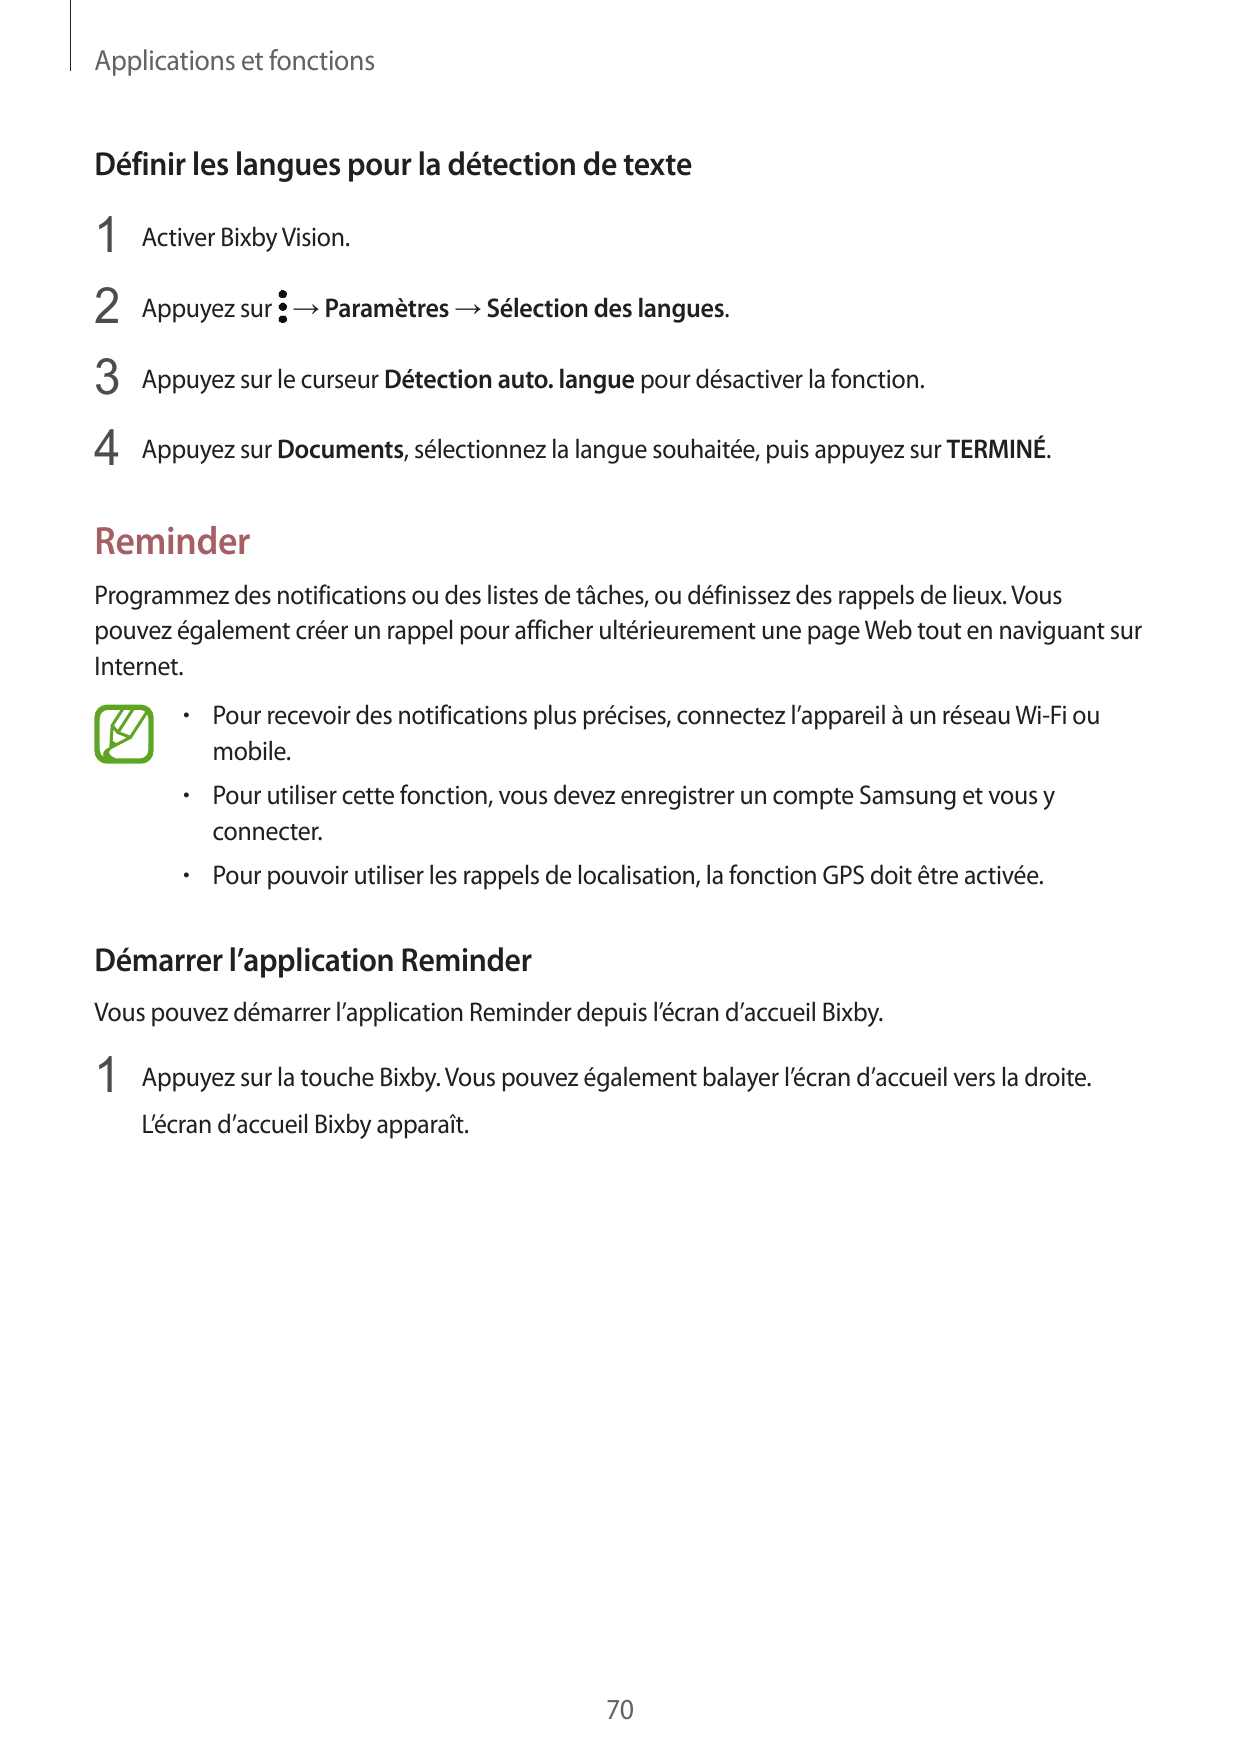 Applications et fonctionsDéfinir les langues pour la détection de texte1 Activer Bixby Vision.2 Appuyez sur → Paramètres → Sélec